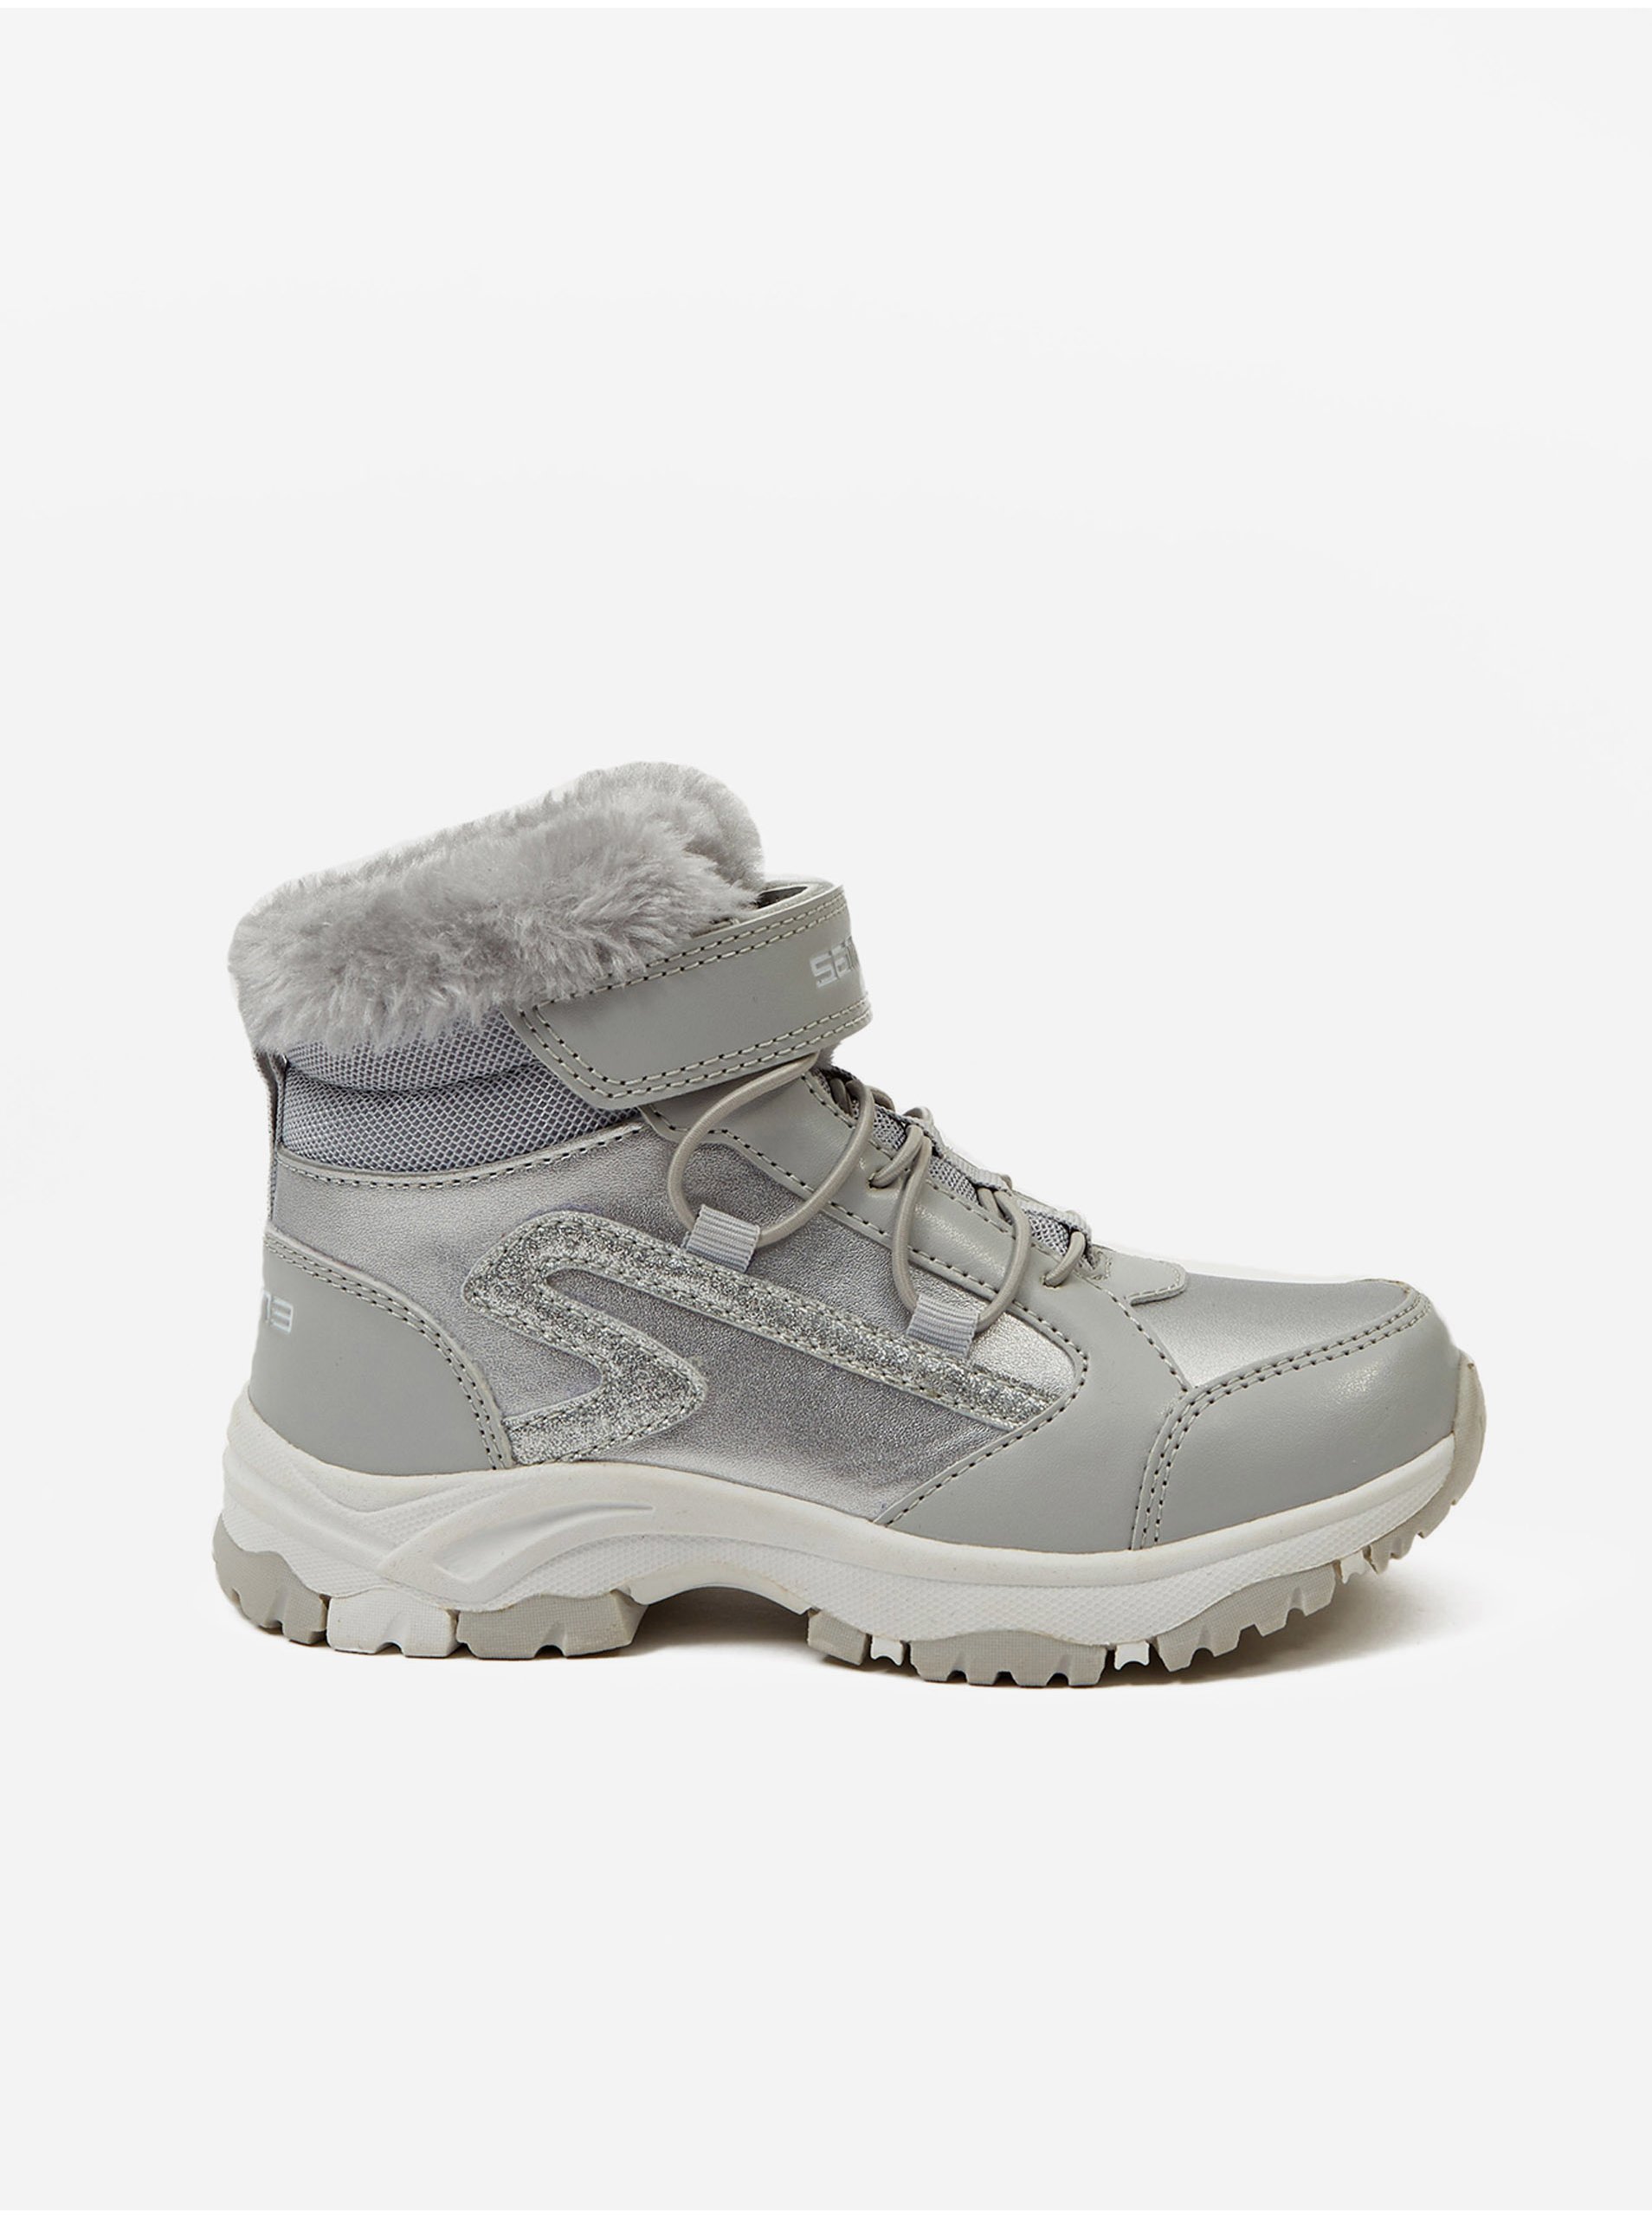 E-shop Holčičí kotníkové zateplené zimní boty ve stříbrné barvě SAM 73 Diss